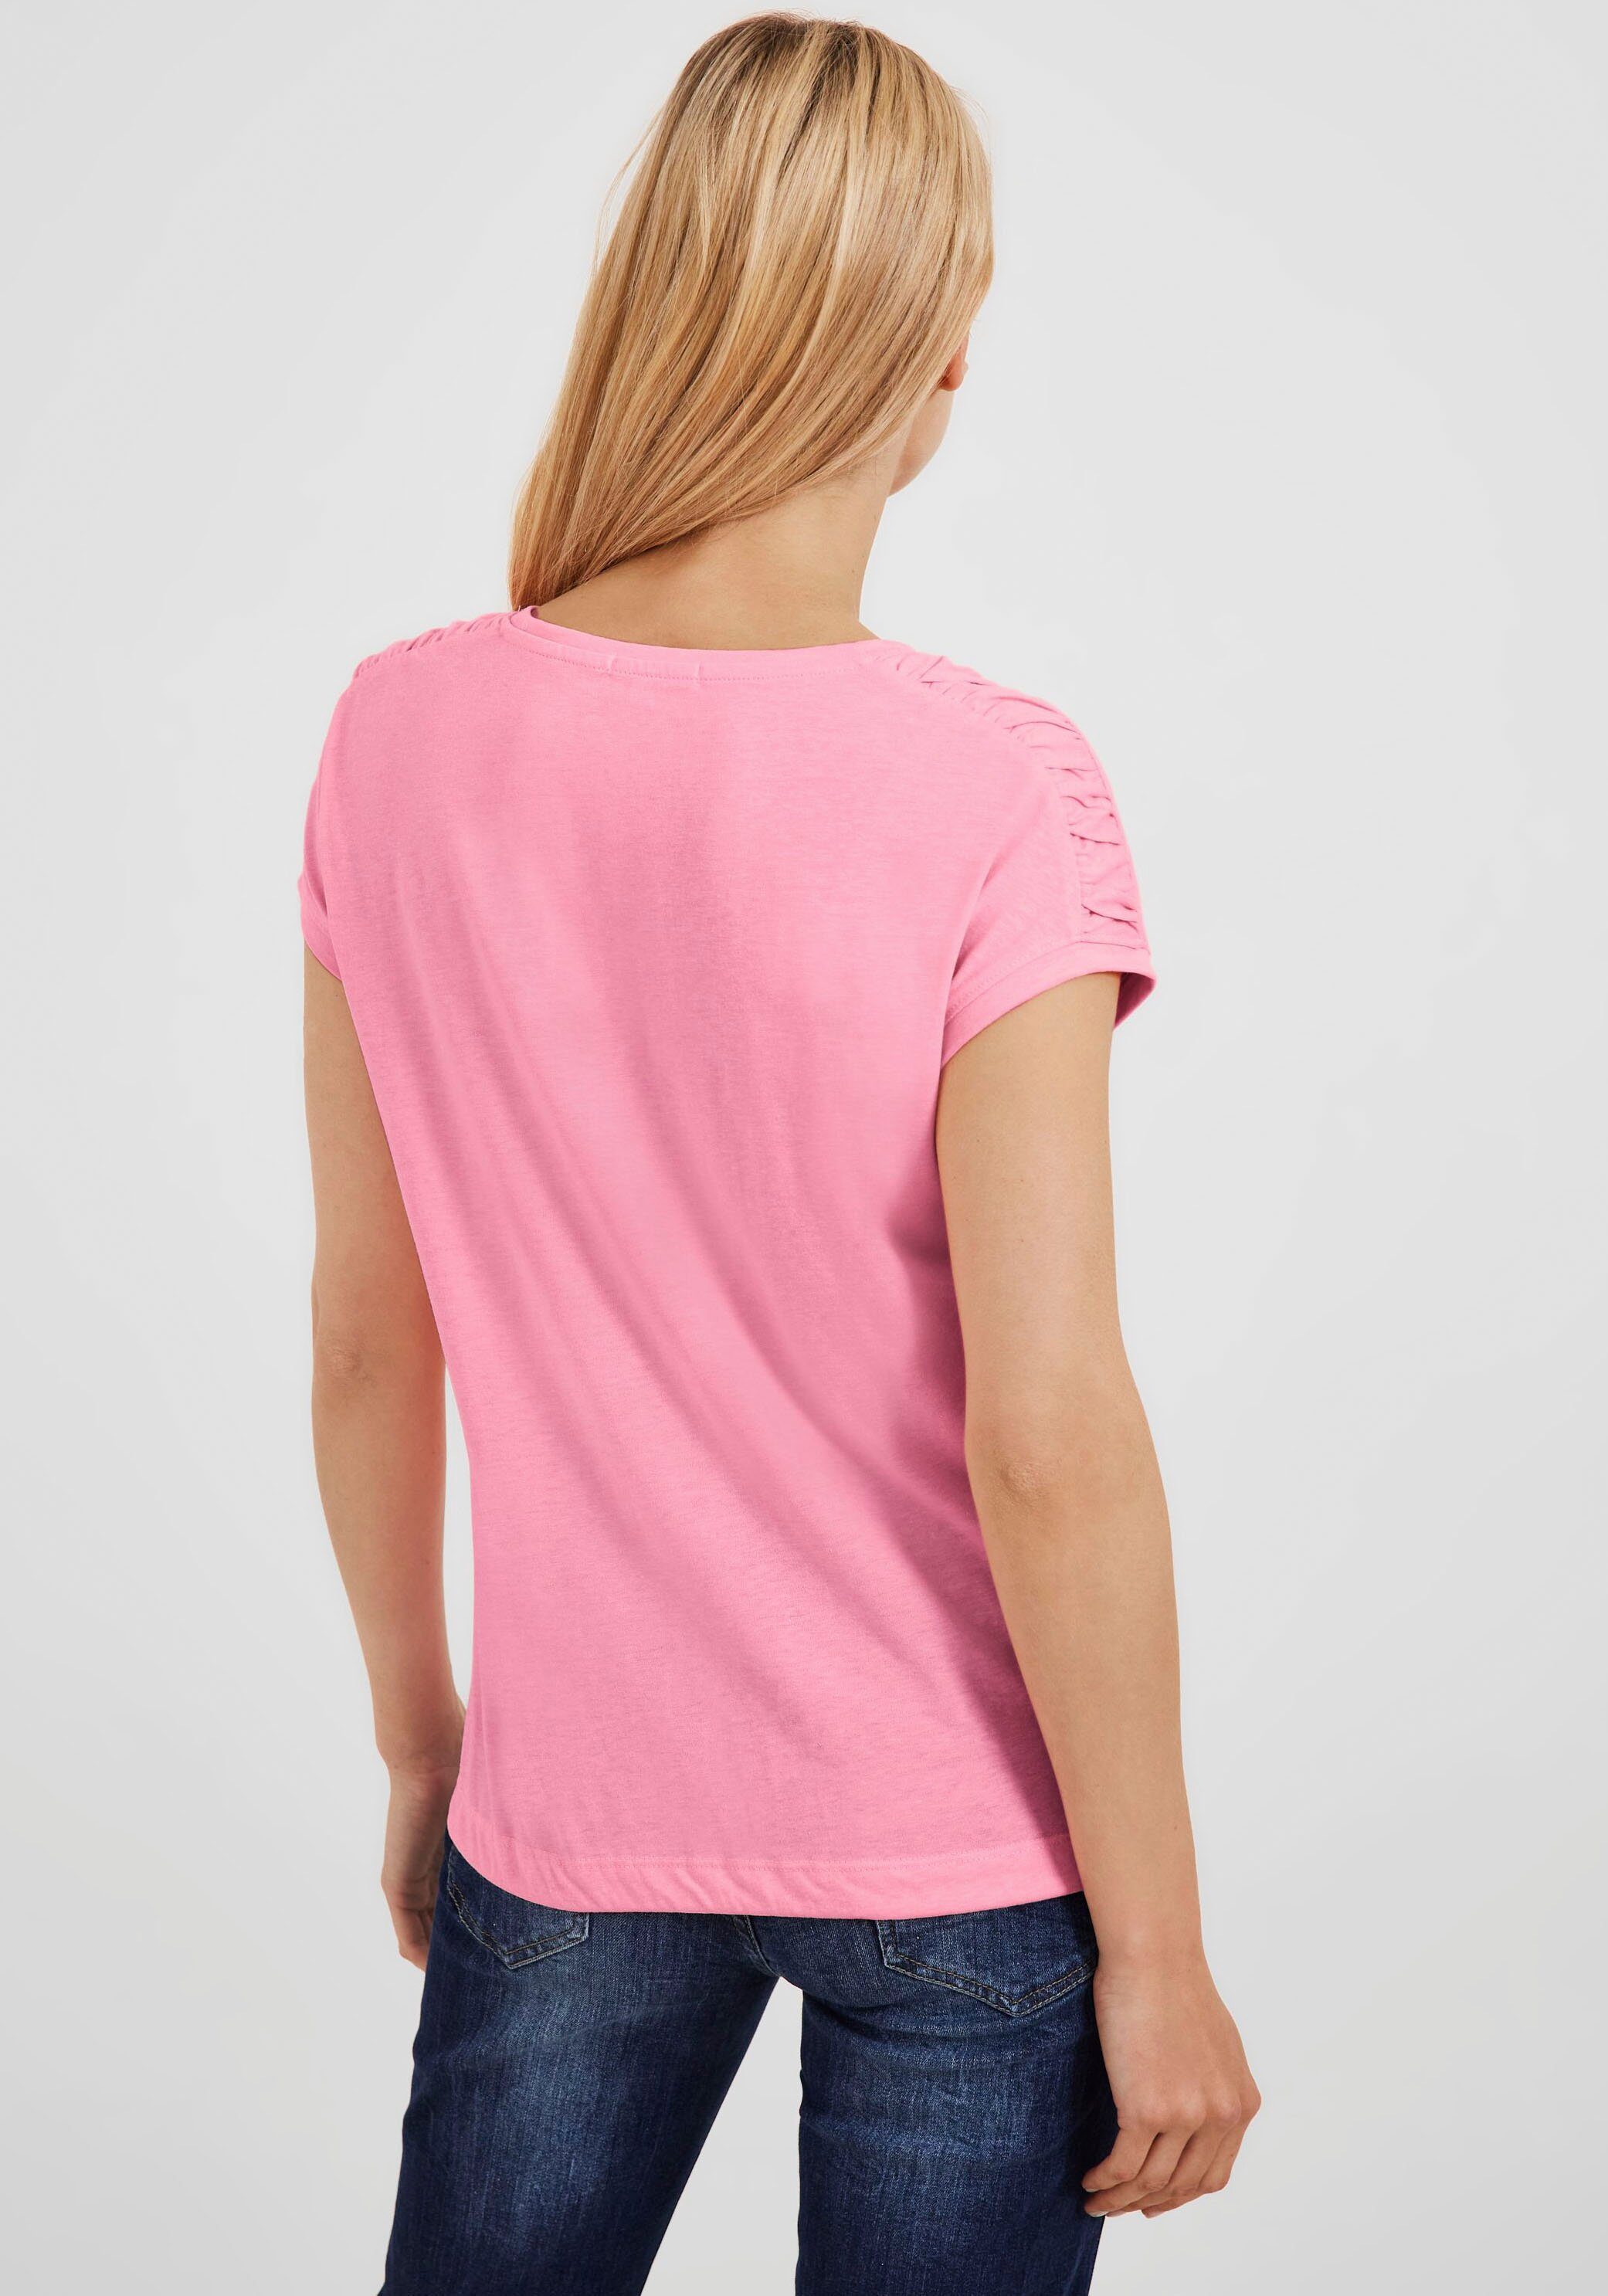 Cecil T-Shirt NOS mit S pink Fledermausärmeln soft Gathering Shoulder